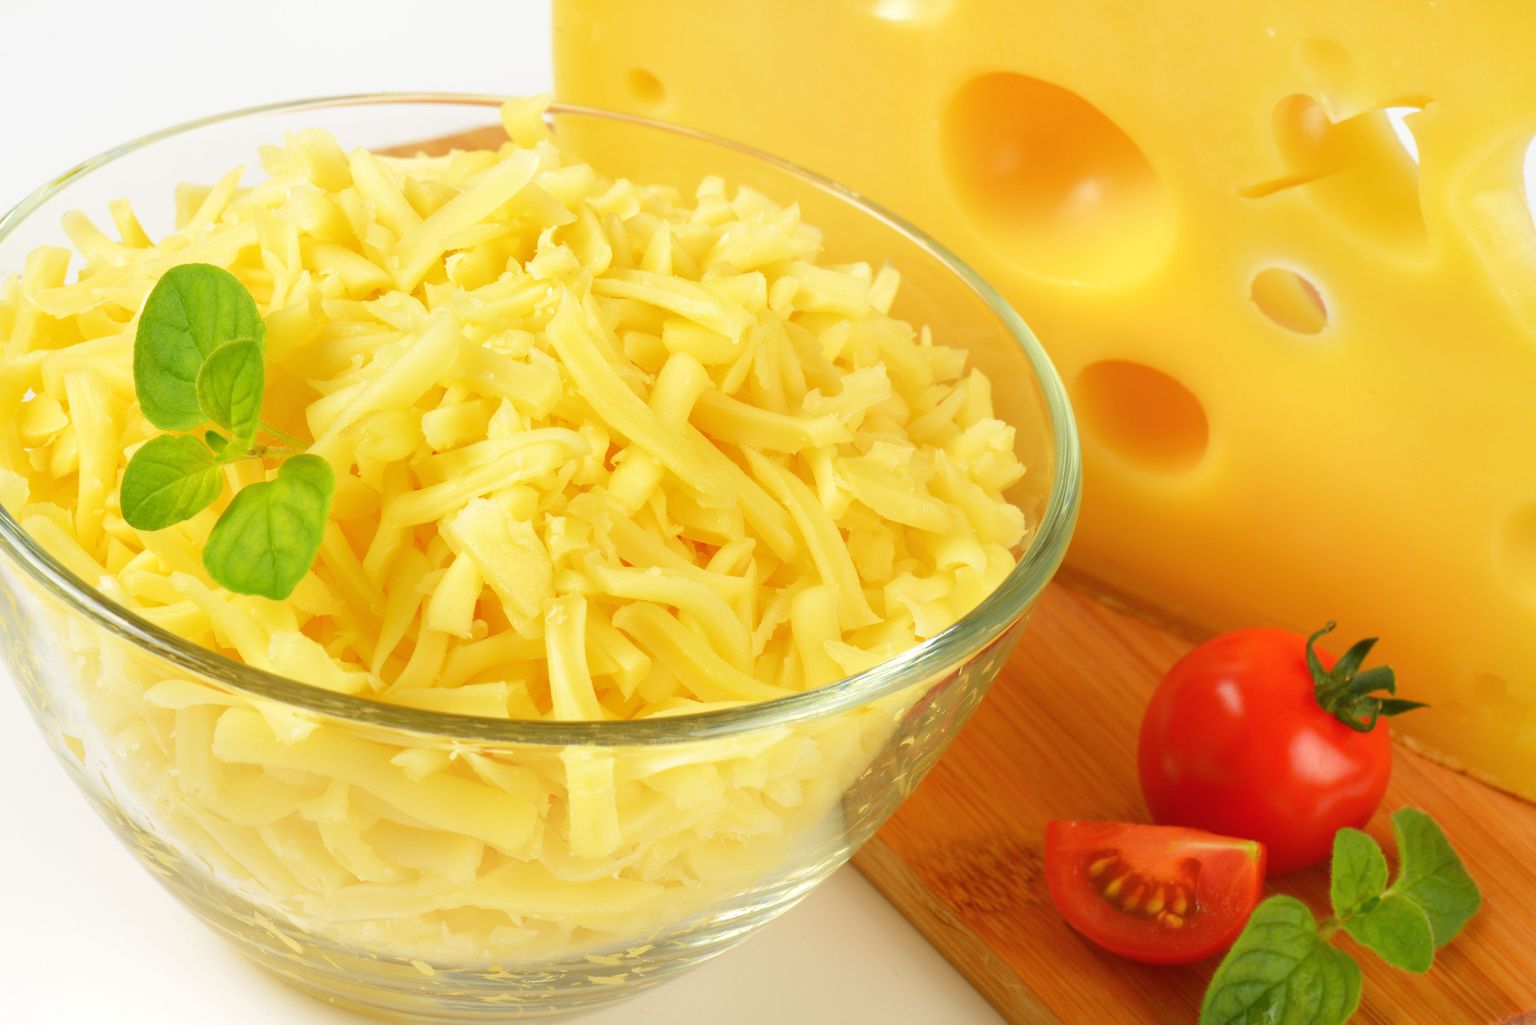 Juustusööjate kolesteroolitase ei olnud kõrgem kui neil, kes juustu ei söönud.